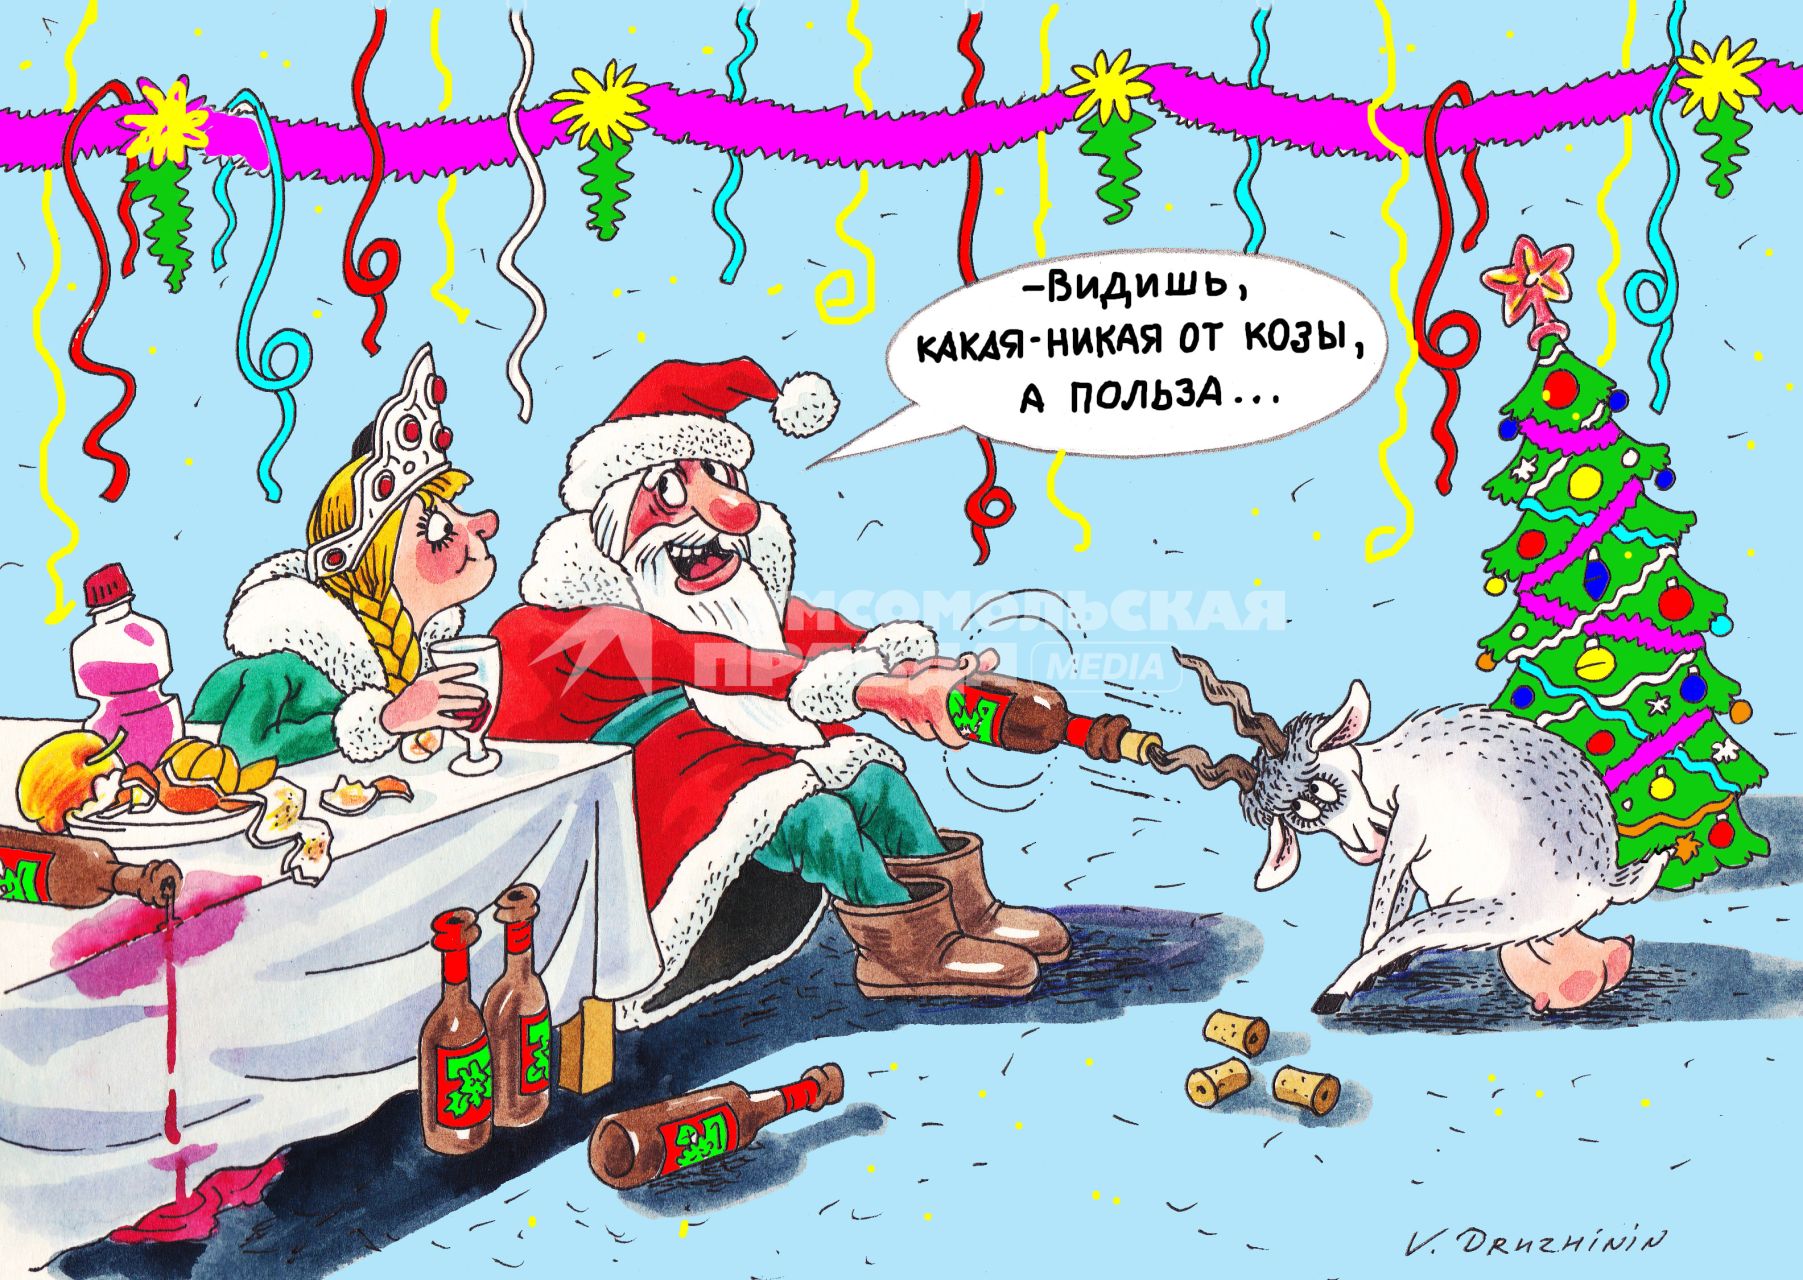 Карикатура. Год Козы 2015. Дед Мороз сидит со Снегурочкой за новогодним столом и открывает бутылку вина с помощью рога козы.